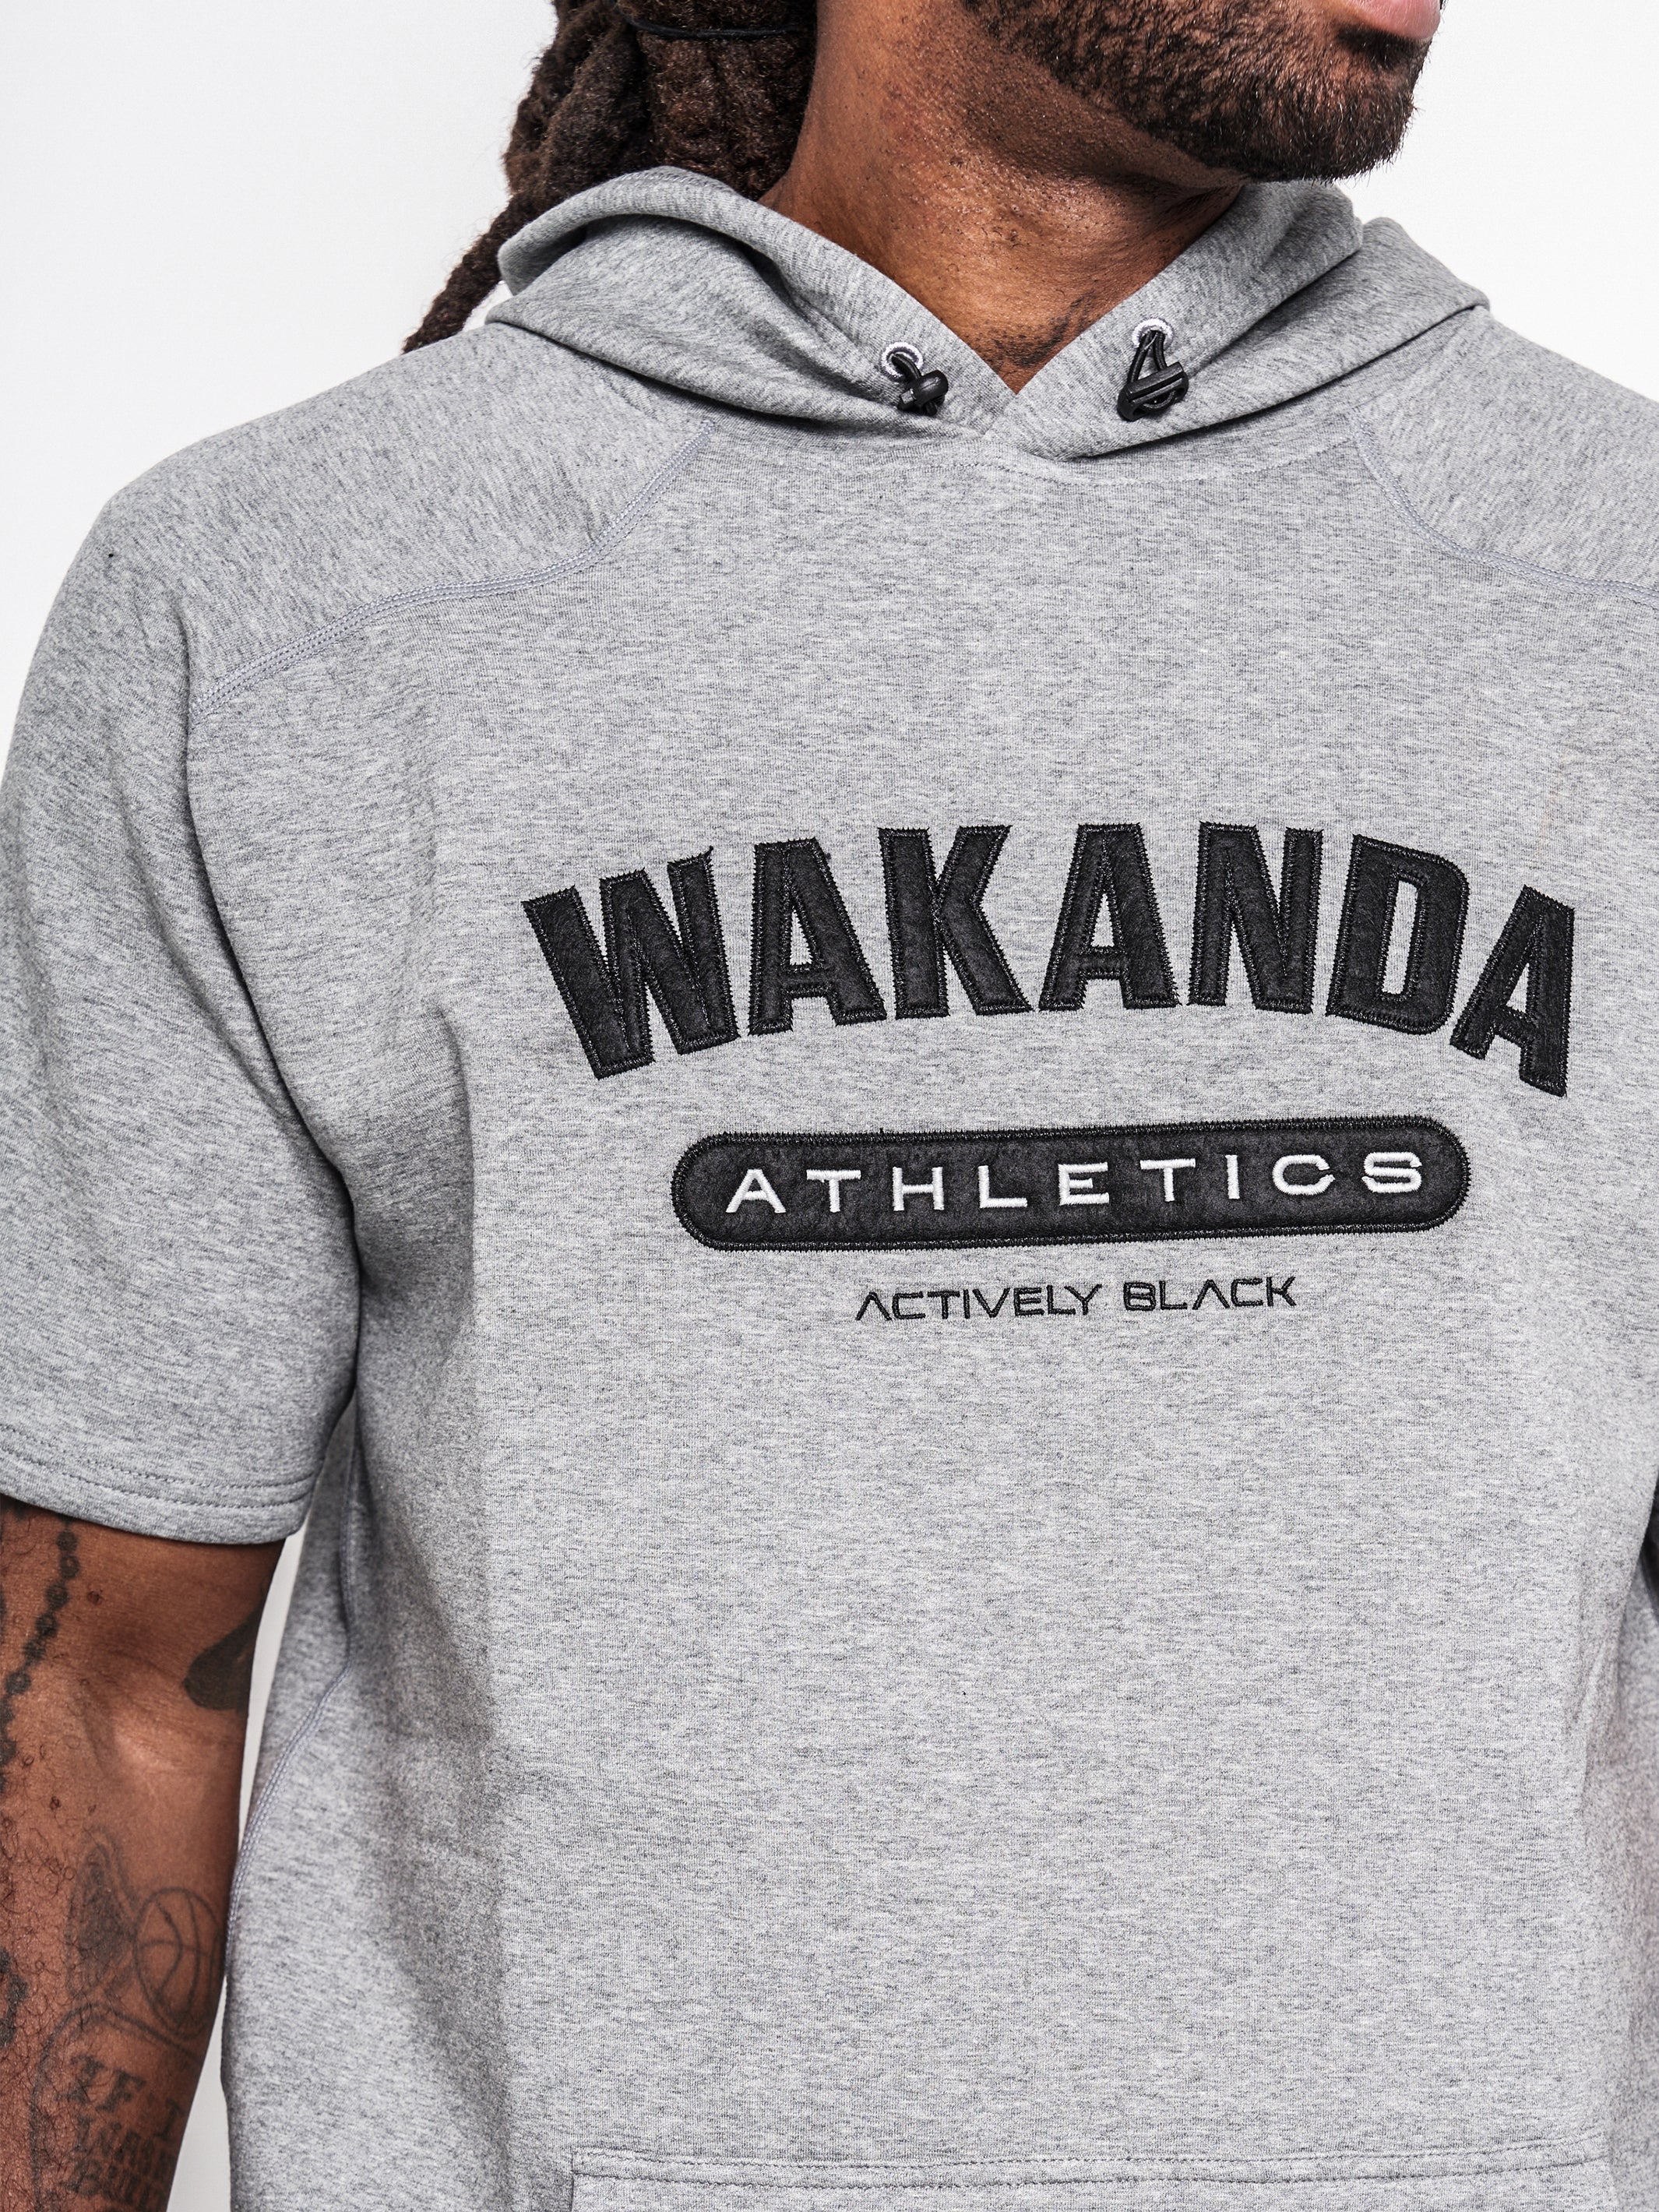 Men's Wakanda Athletics Classic Short Sleeve Hoodie